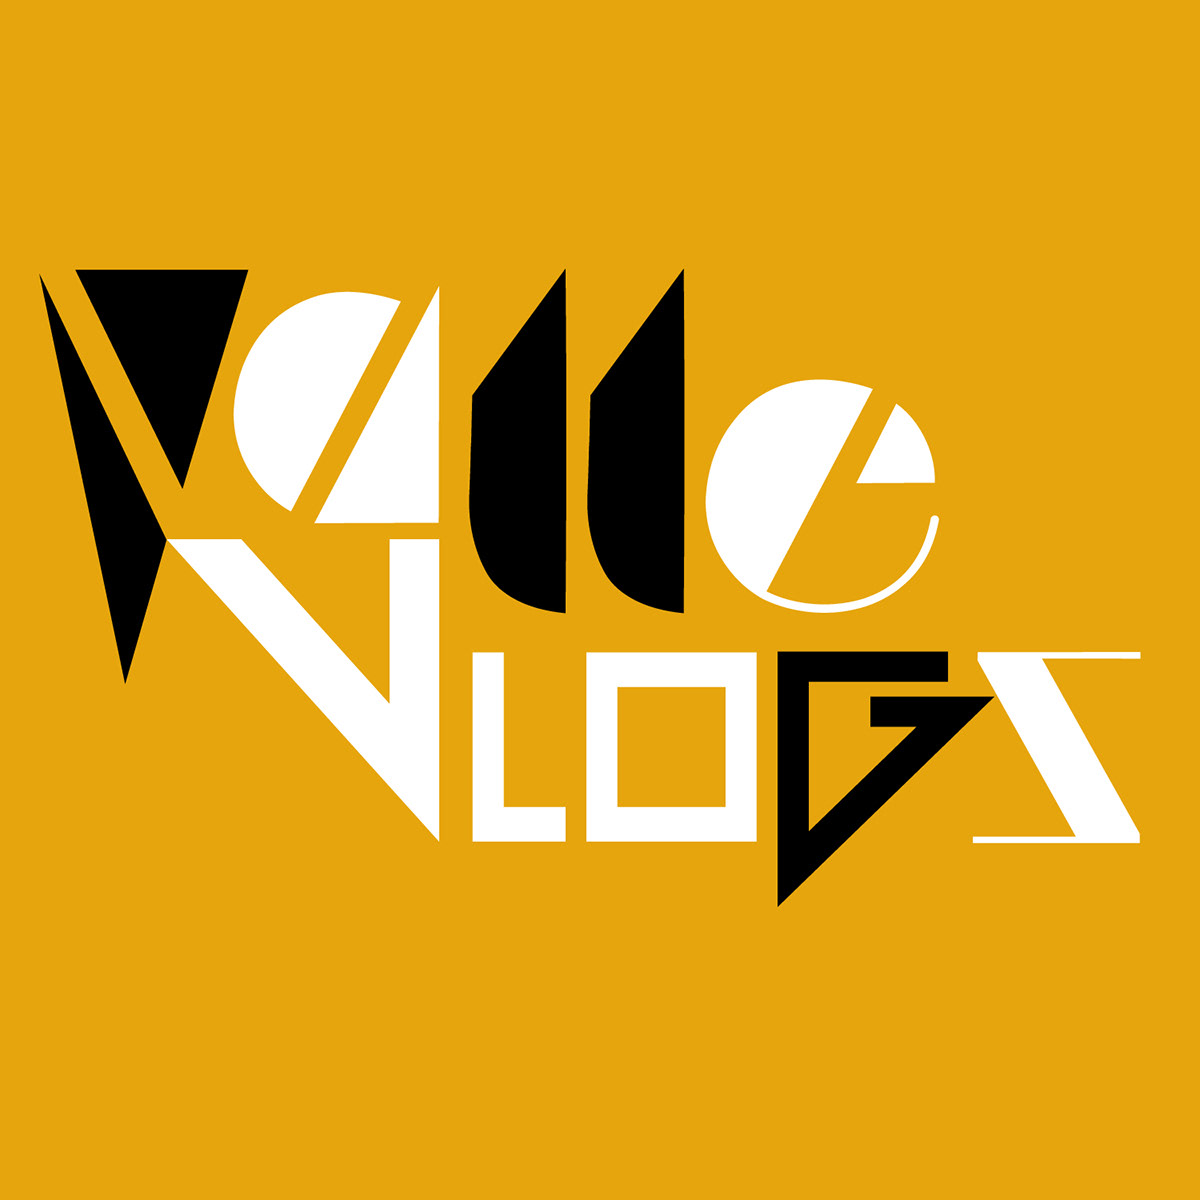 Diseño de logotipo ValleVlogs